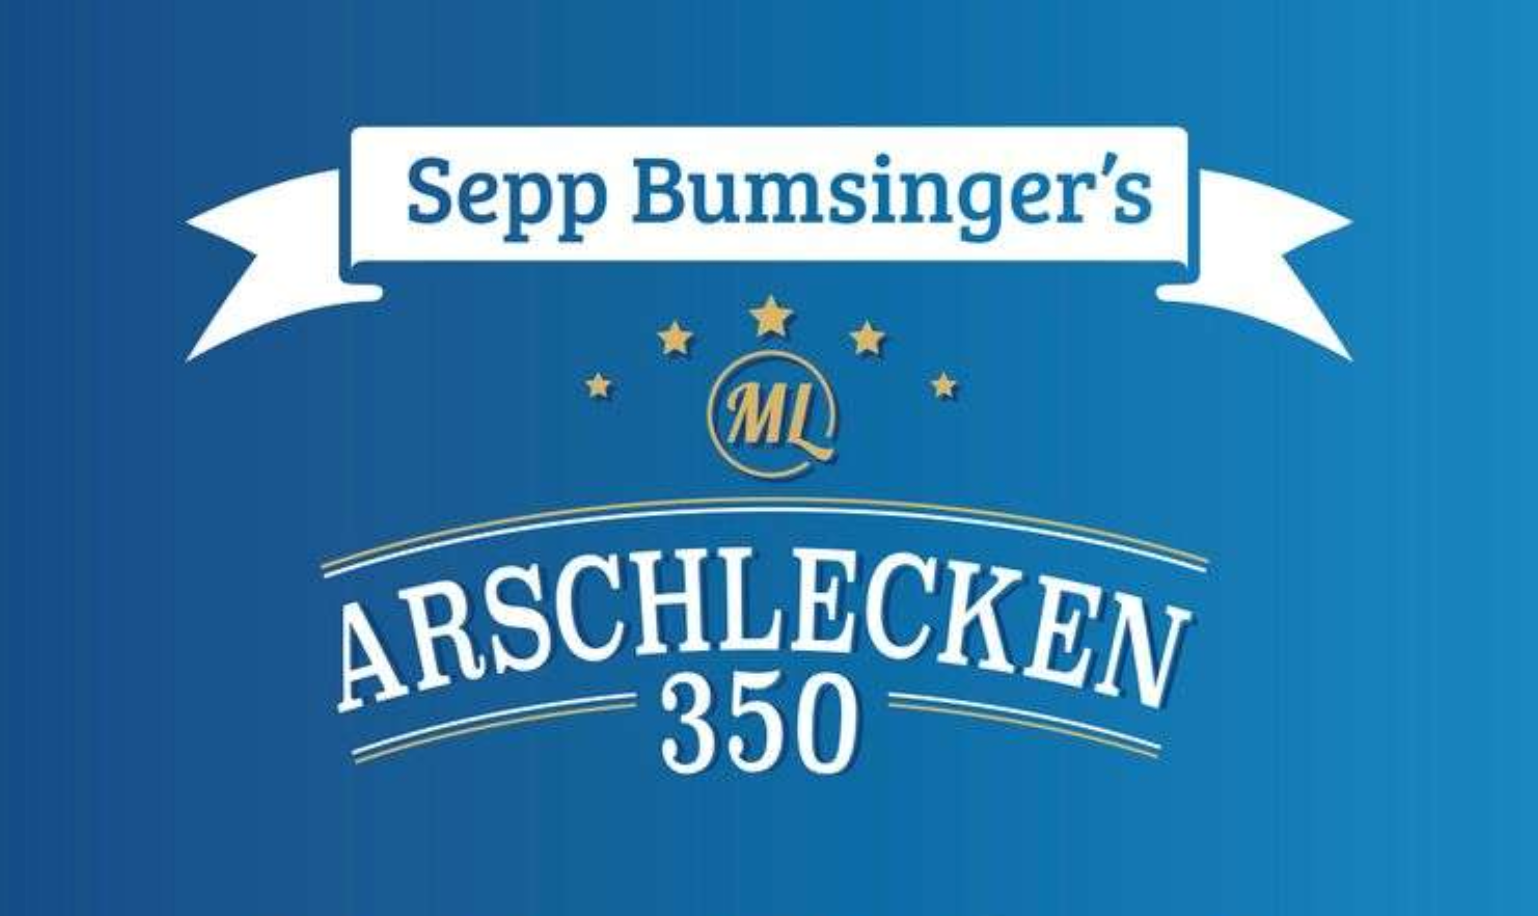 (c) Arschlecken350.com